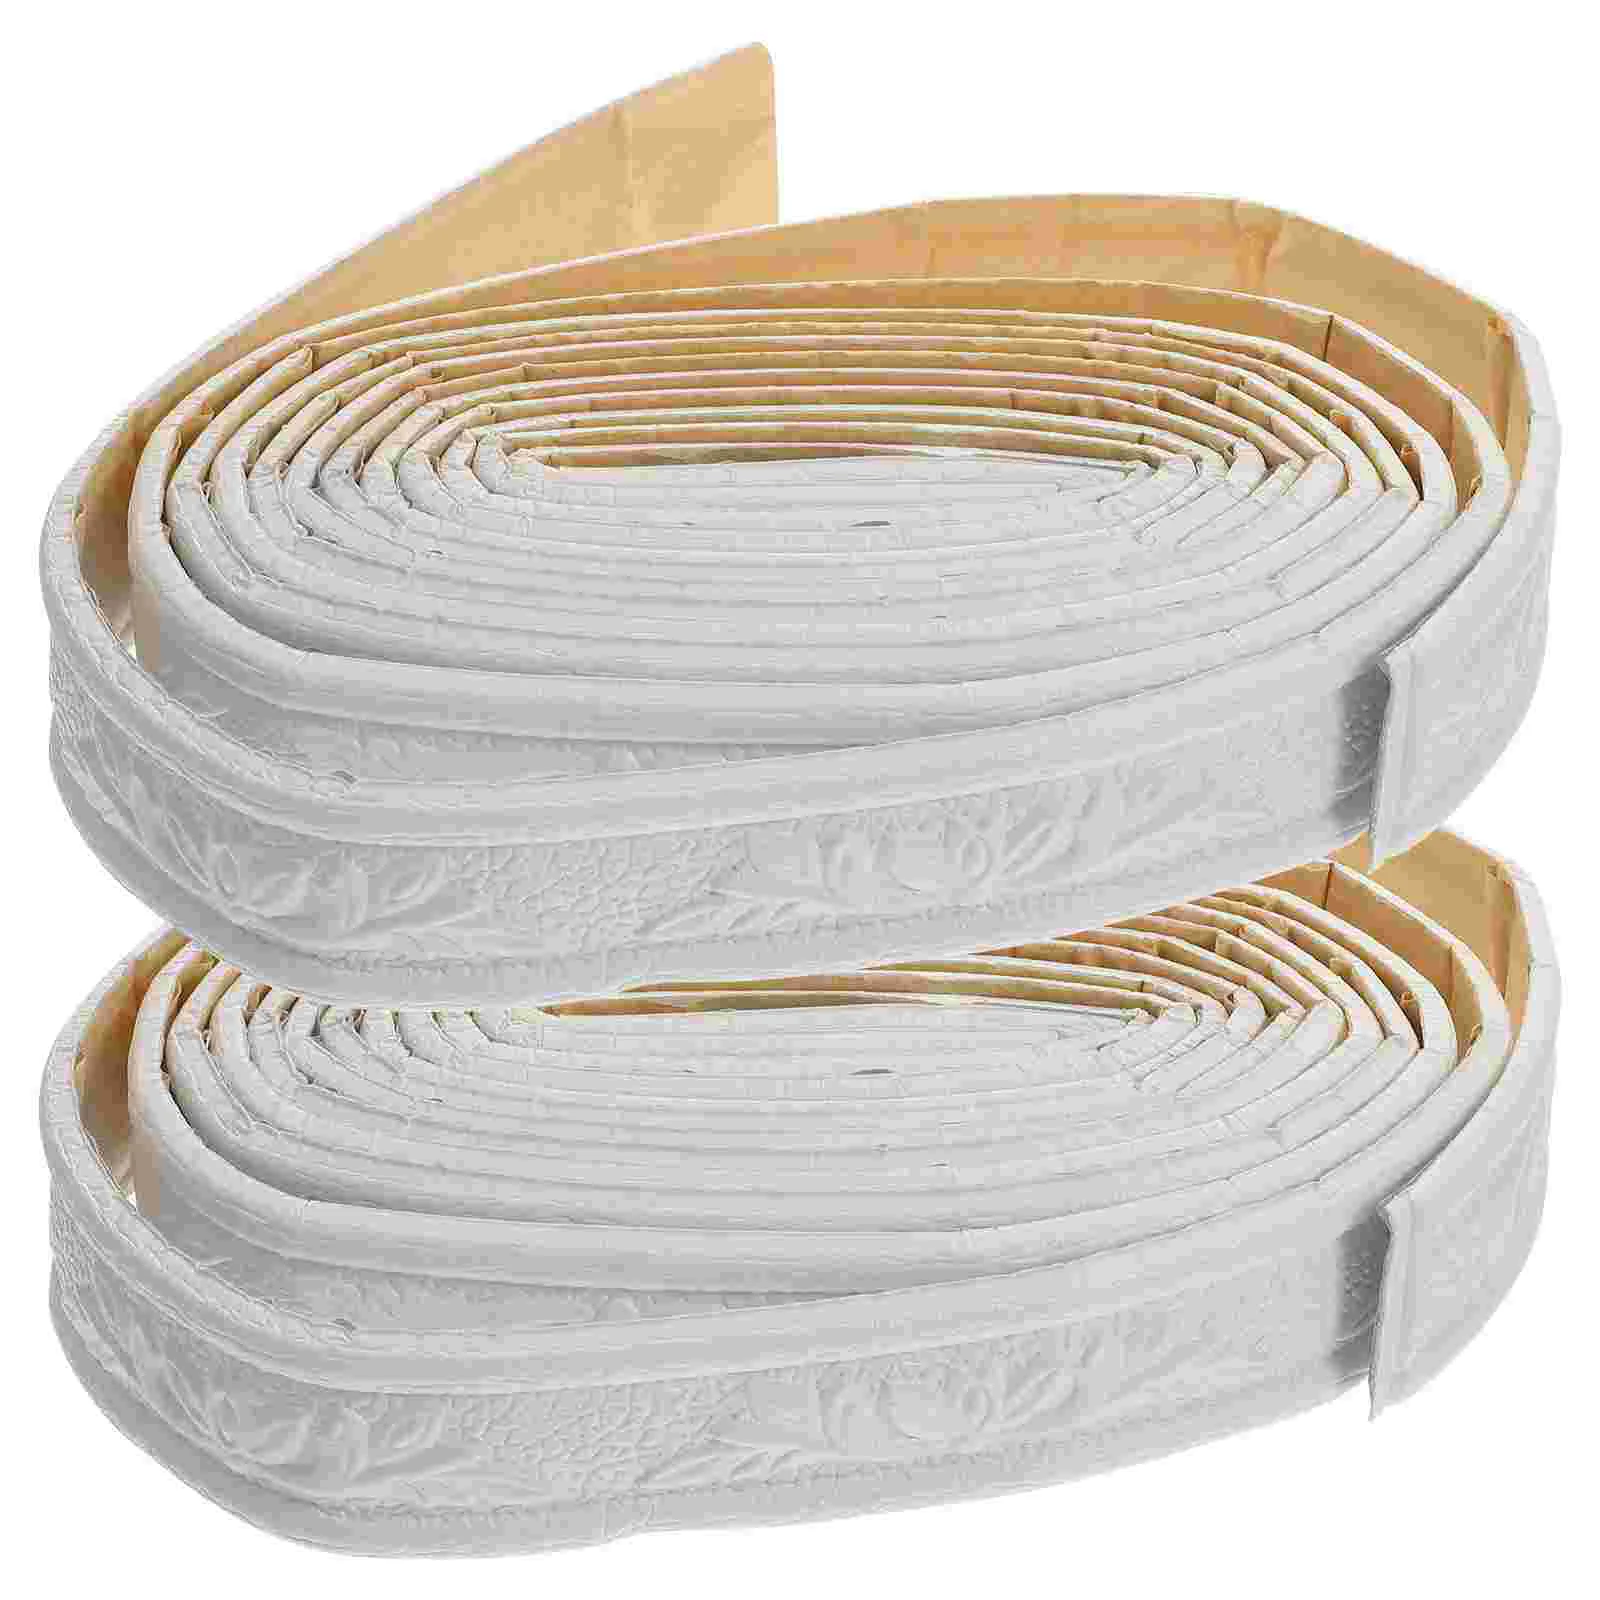 

2 Roll Baseboard Tile Trim Self Adhesive Seam Strip Caulk Tape Skirting 3d Wallpaper Border Foam Sticker Office Ceiling Tiles